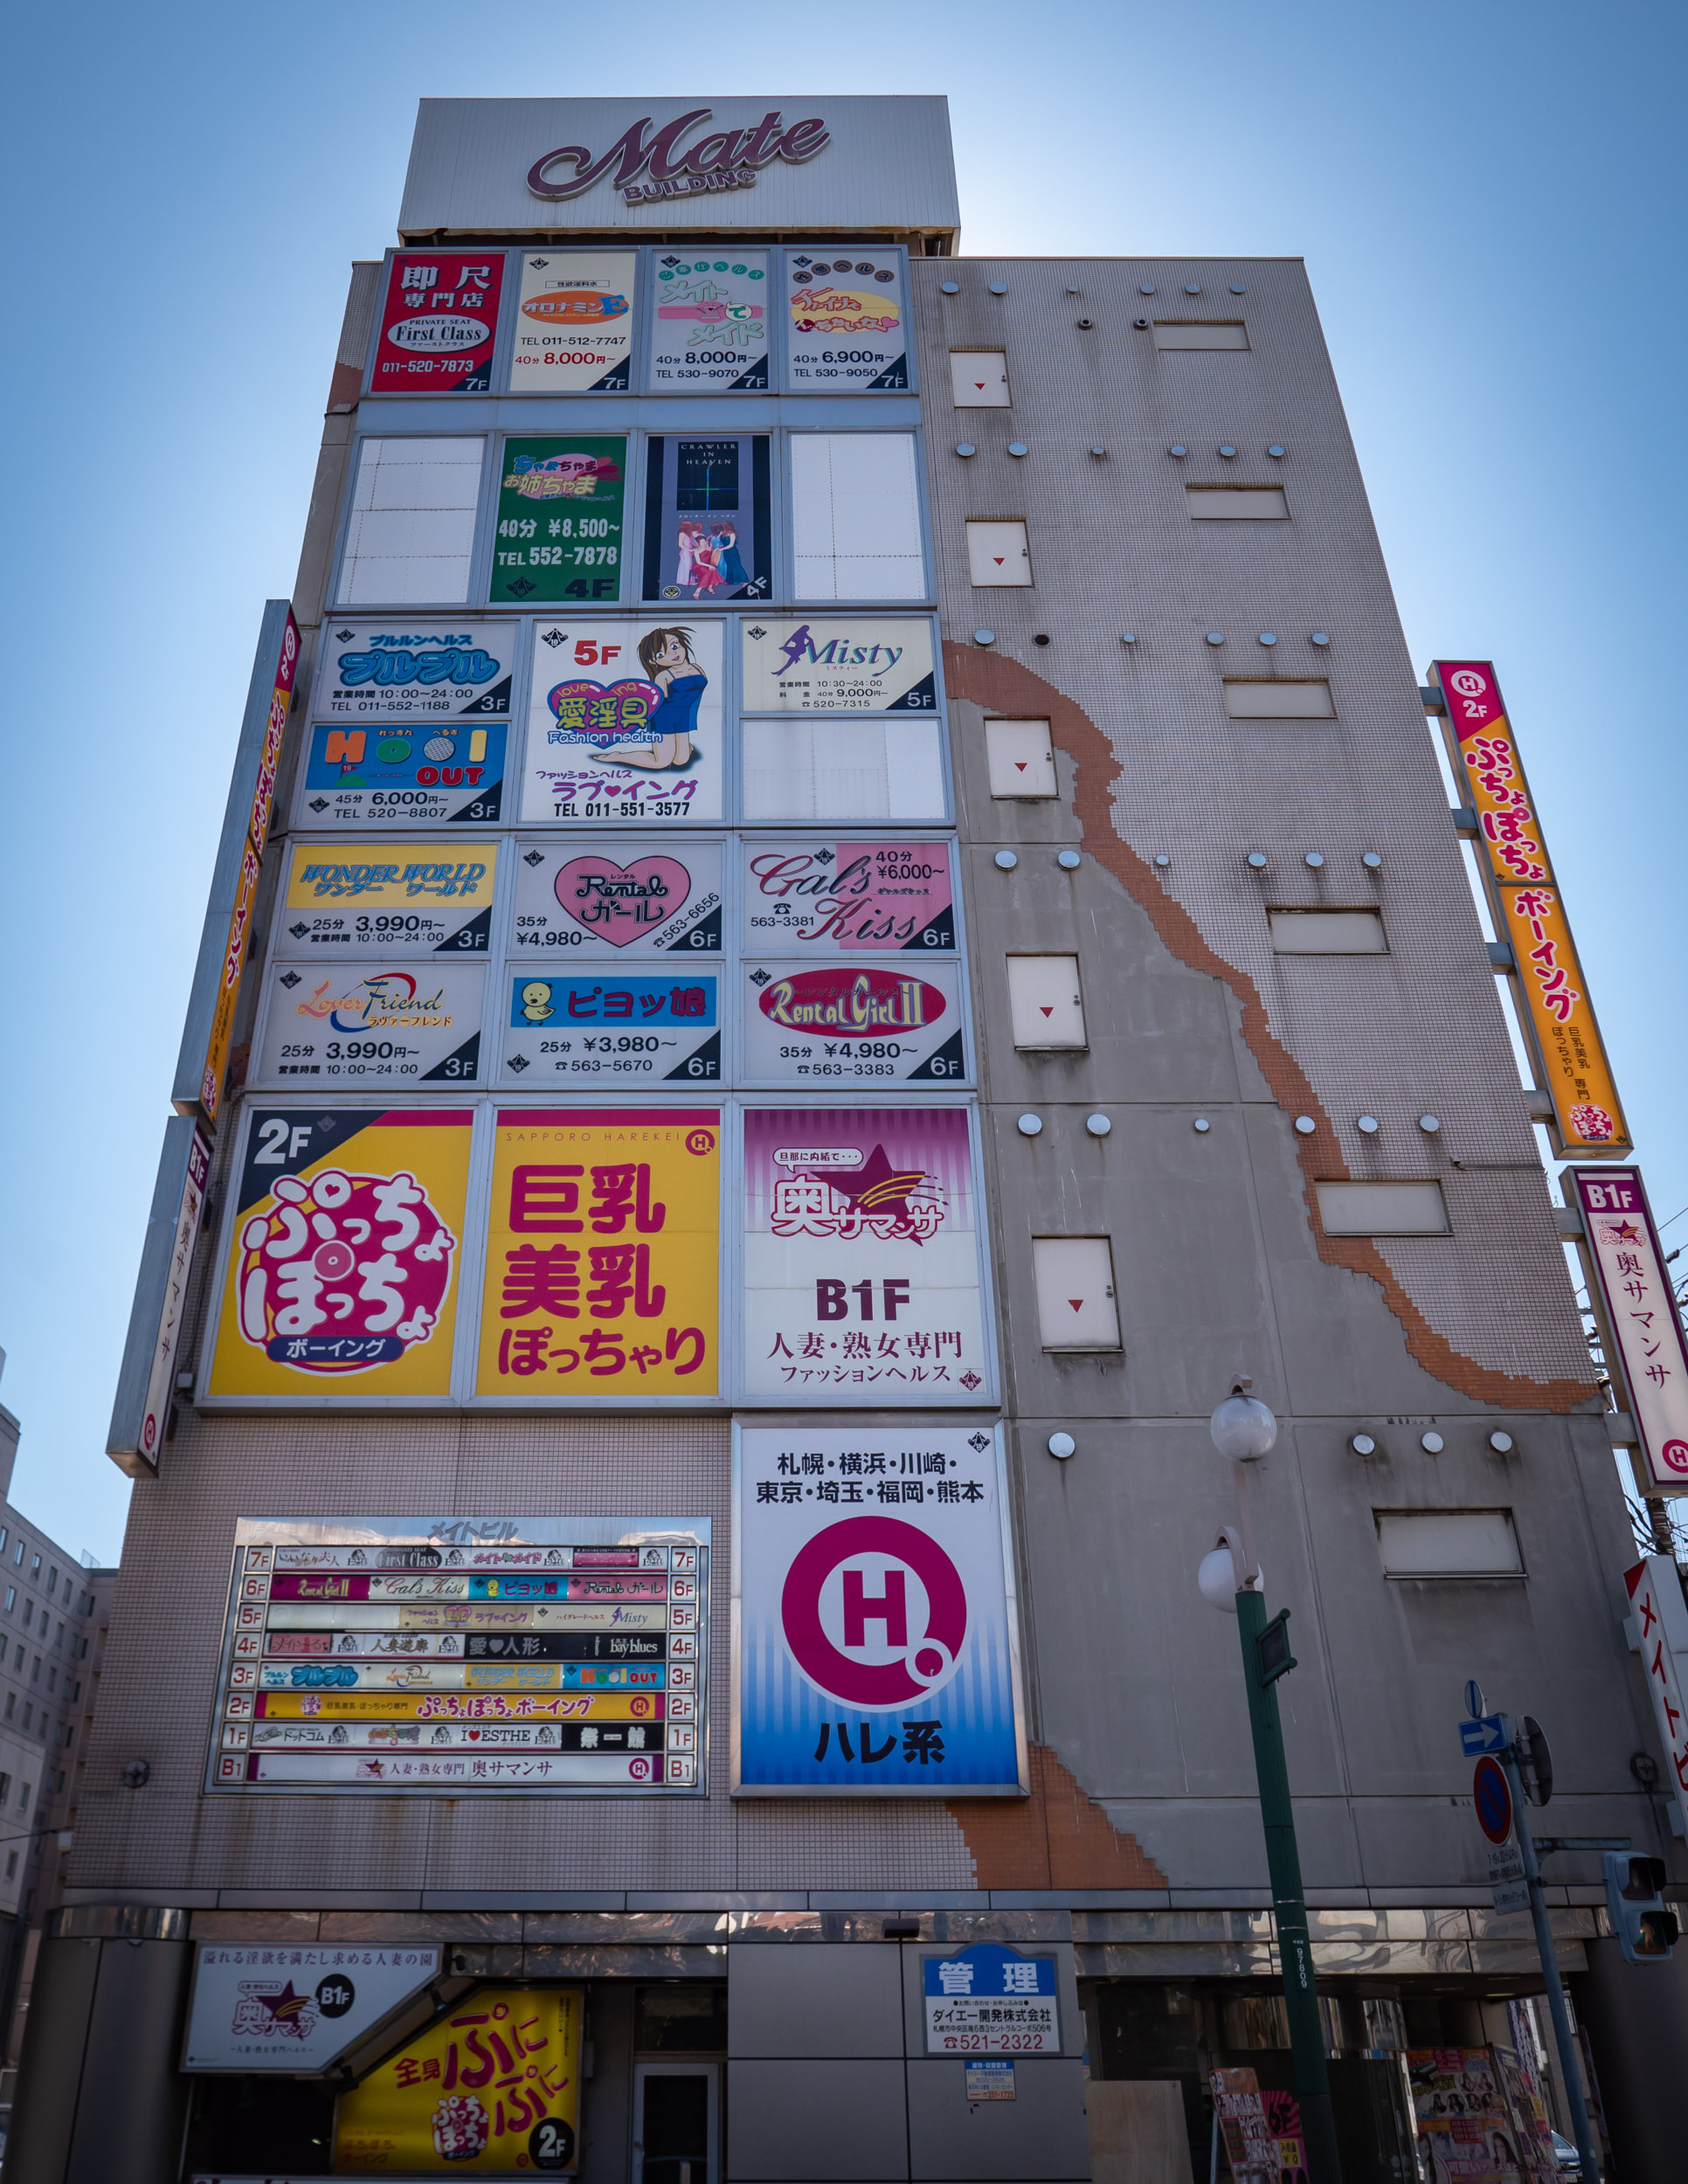 札幌市中央区南６条西５丁目　風俗店が割拠するメイトビルの外観　DMC-GX8 + LEICA DG 12-60mm